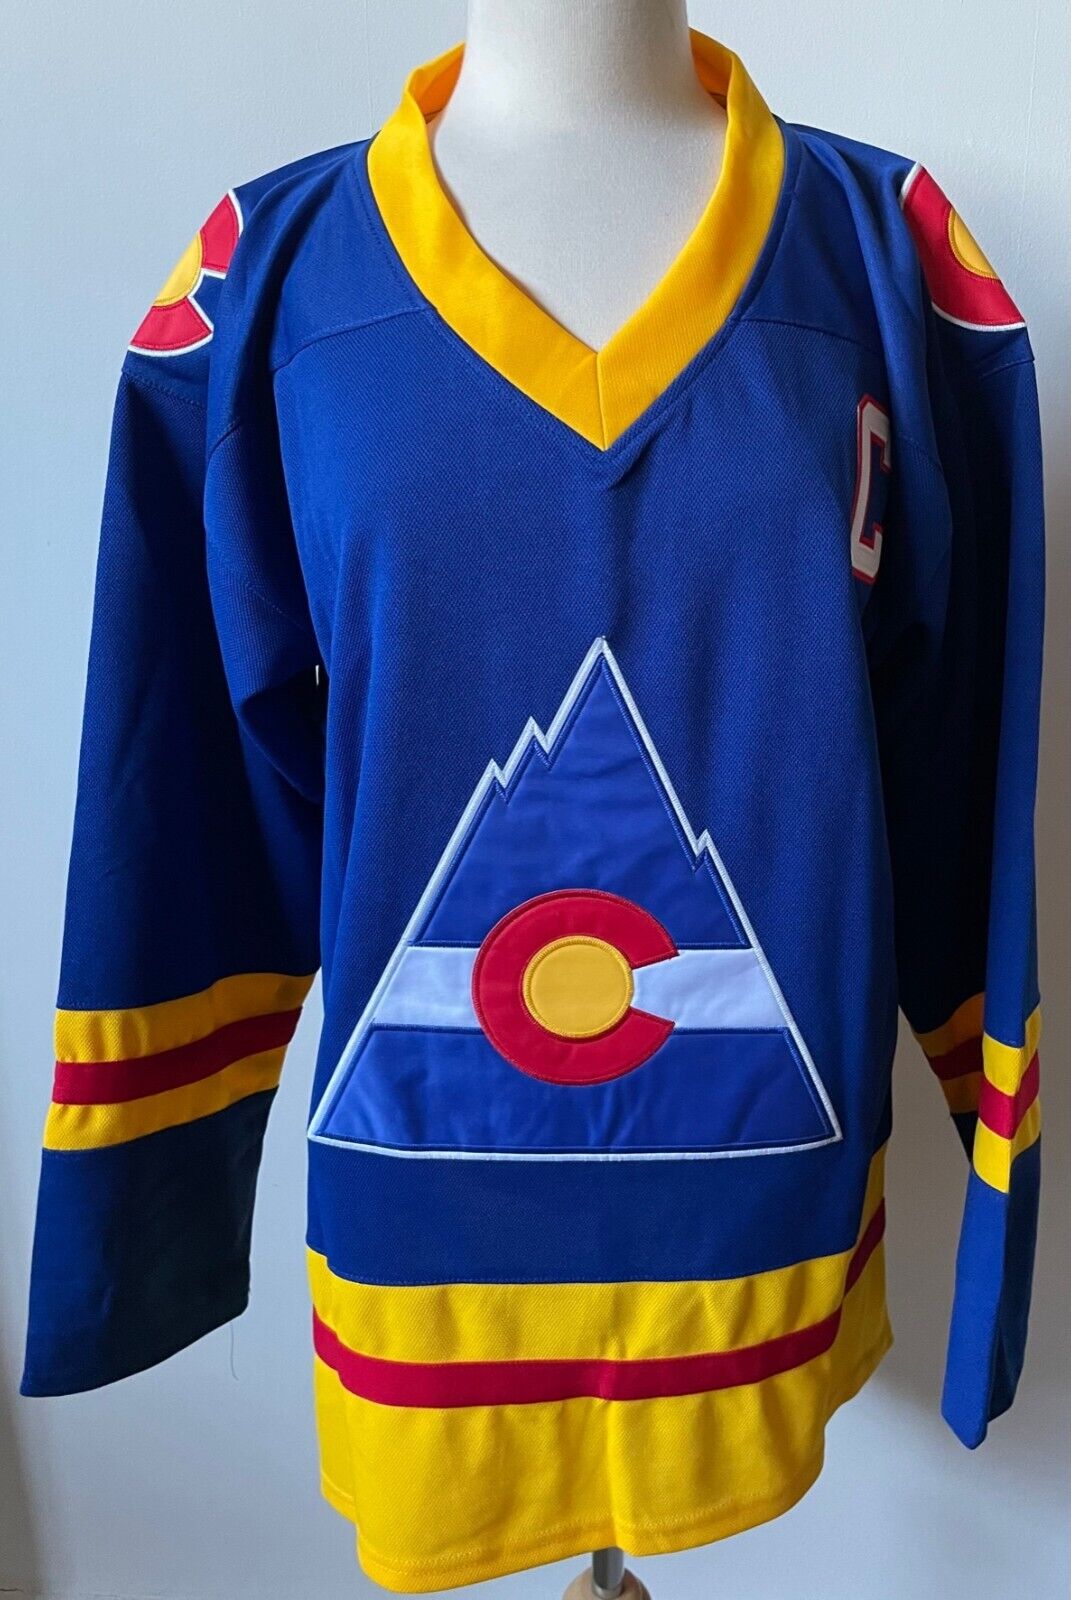 1980-81 Lanny McDonald Colorado Rockies Sweater